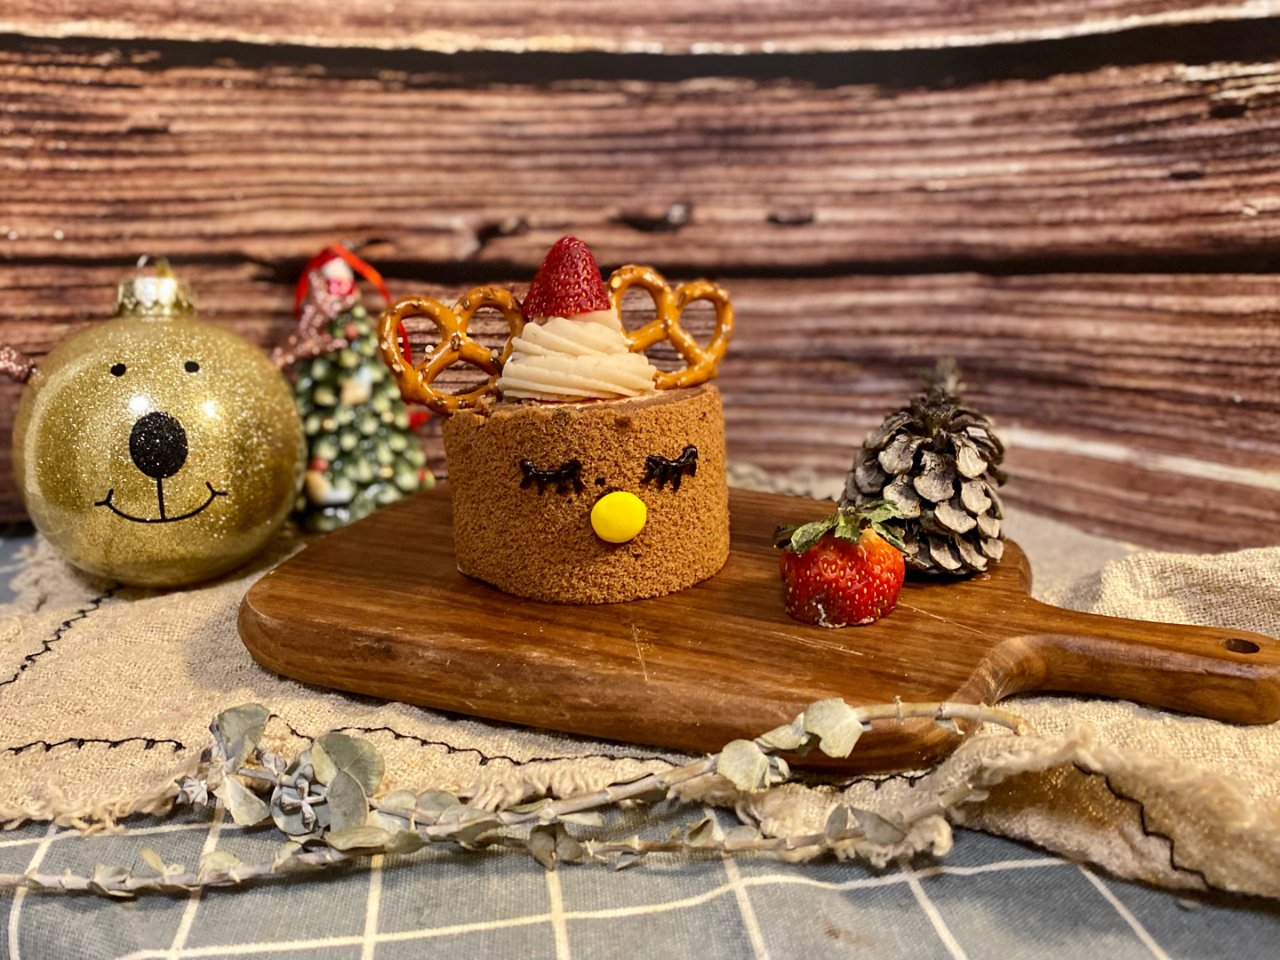 圣诞预热🎄麋鹿🦌摩卡蛋糕卷🍰 +1000...